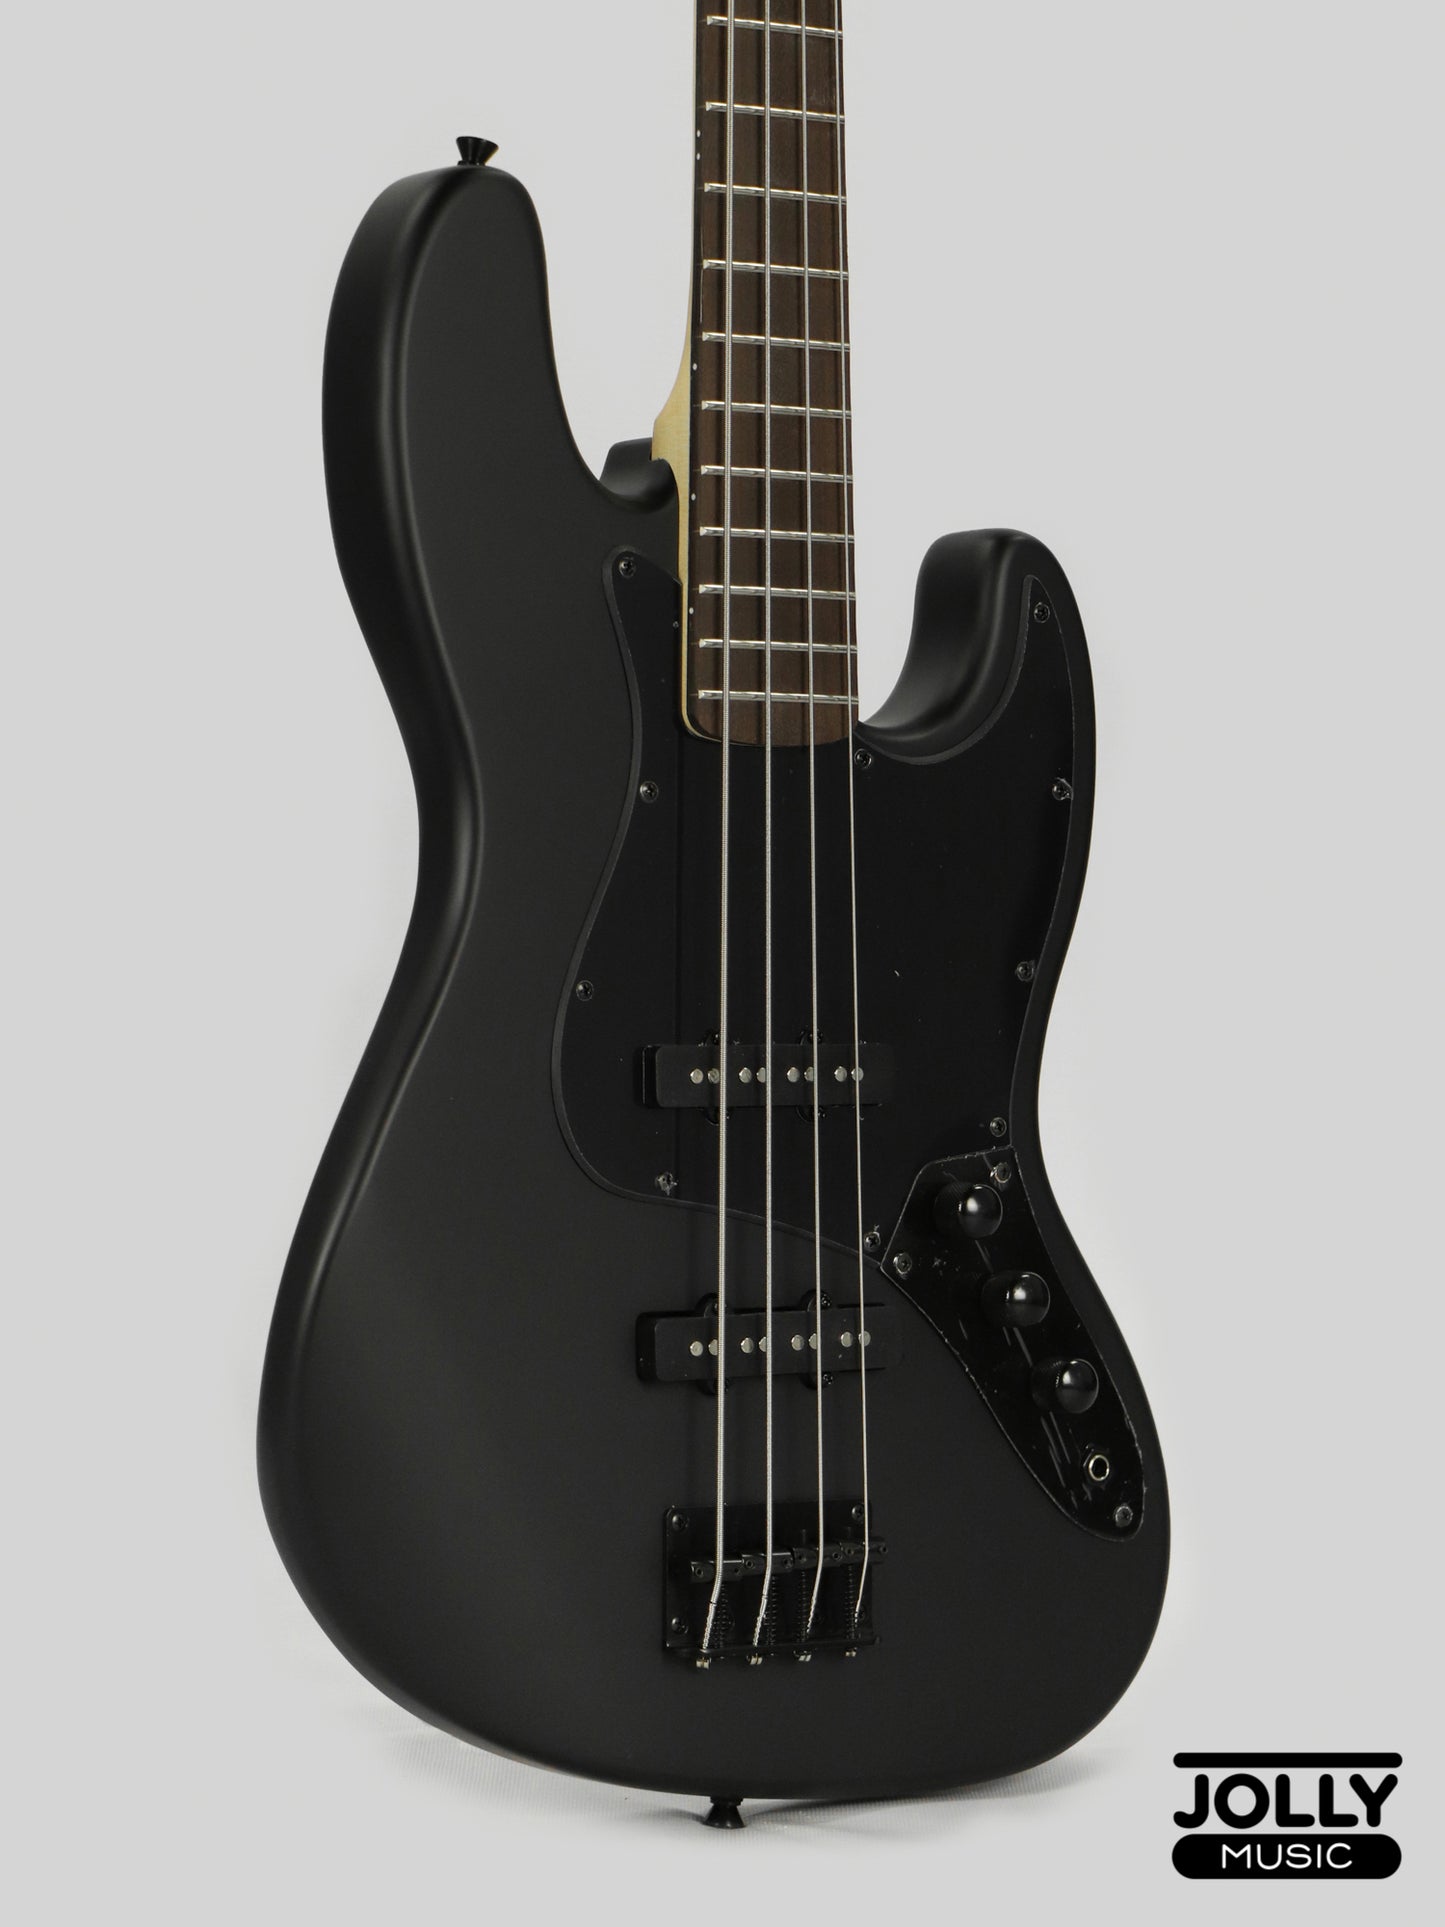 JCraft X Series JBX-1 Offset 4-String Bass Guitar -  Matte Black